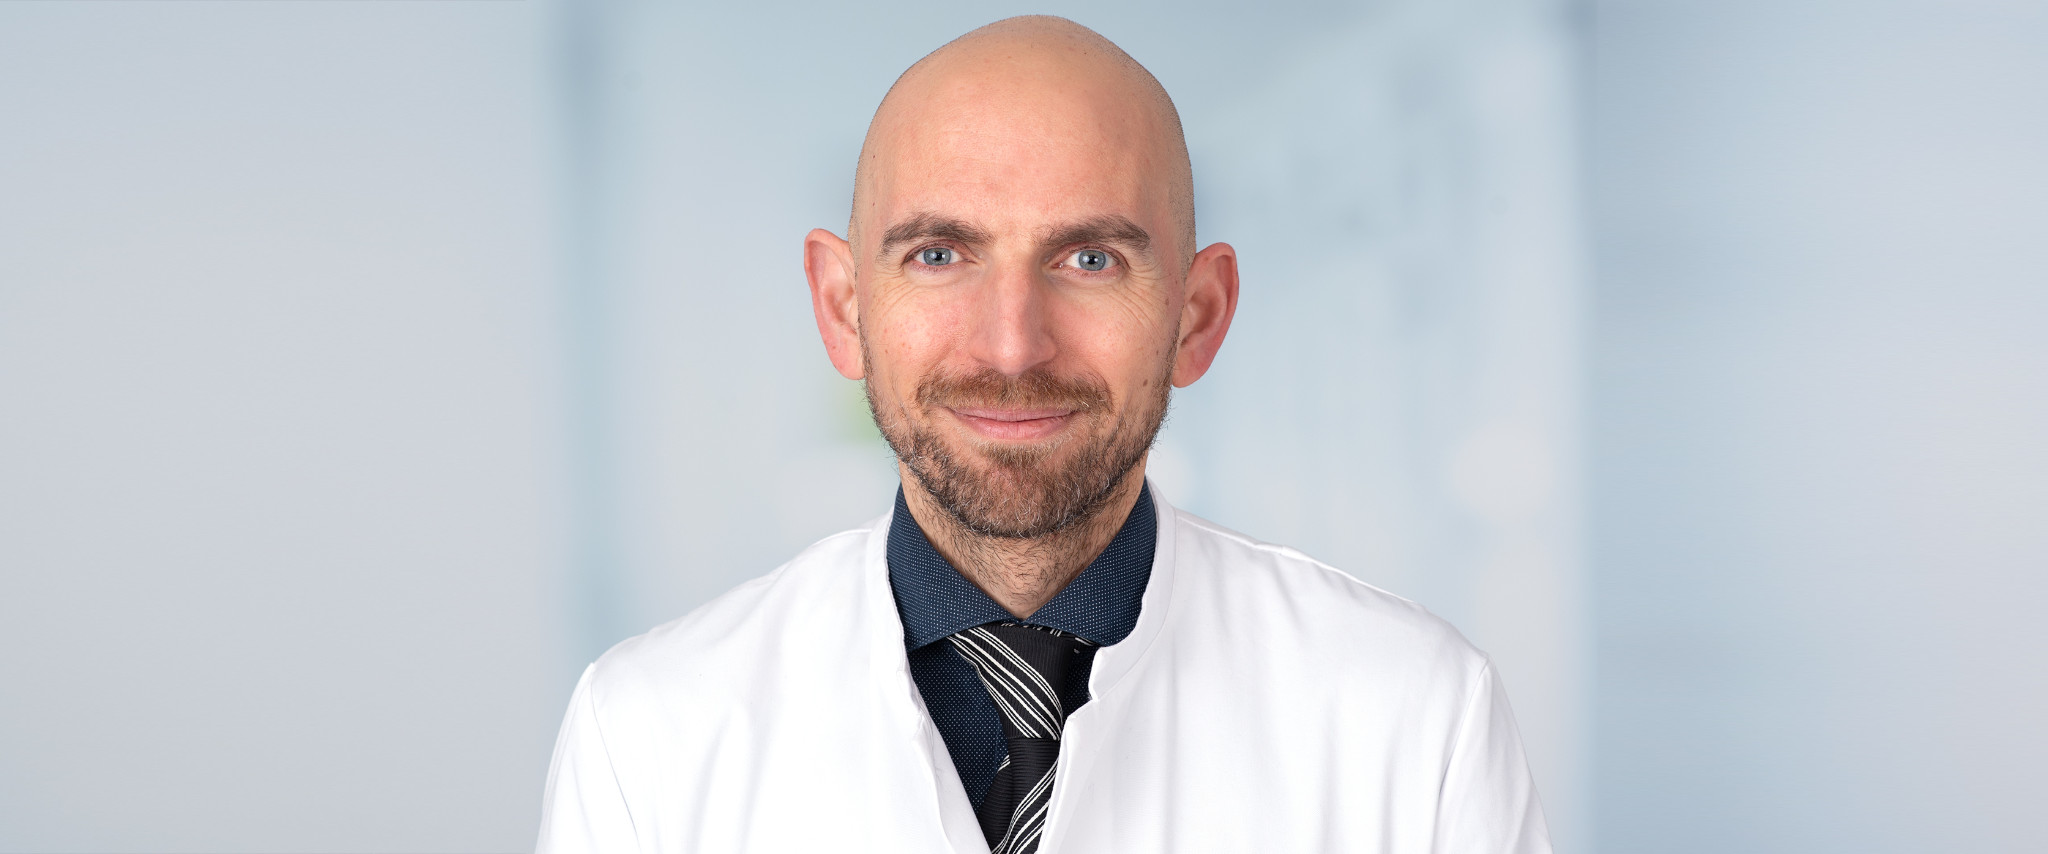 Dr. Karl Mercieca ist ein renommierter Glaukom-Experte und leitet die neue Sektion Glaukom am UKB.